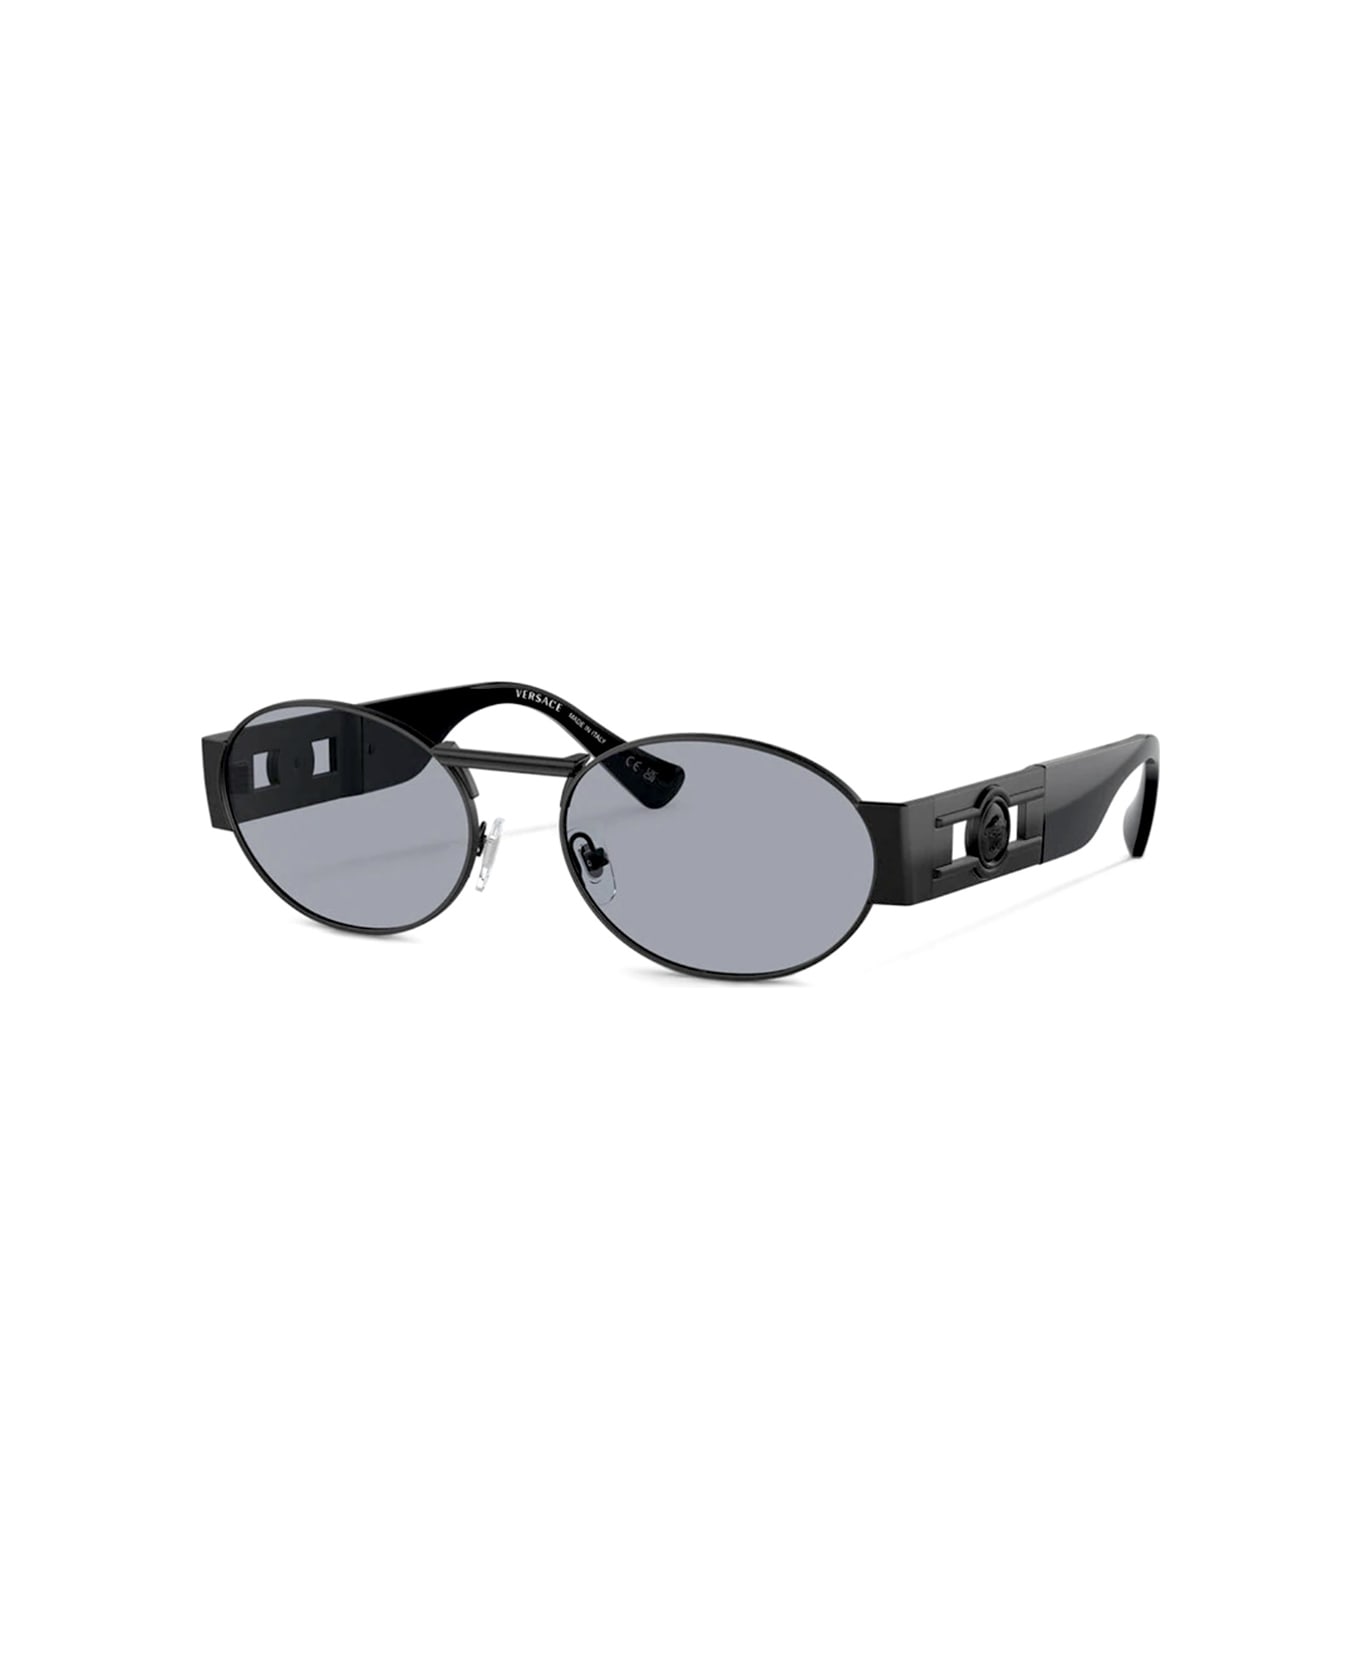 Versace Eyewear Ve2264 1261/1 Sunglasses - Nero サングラス